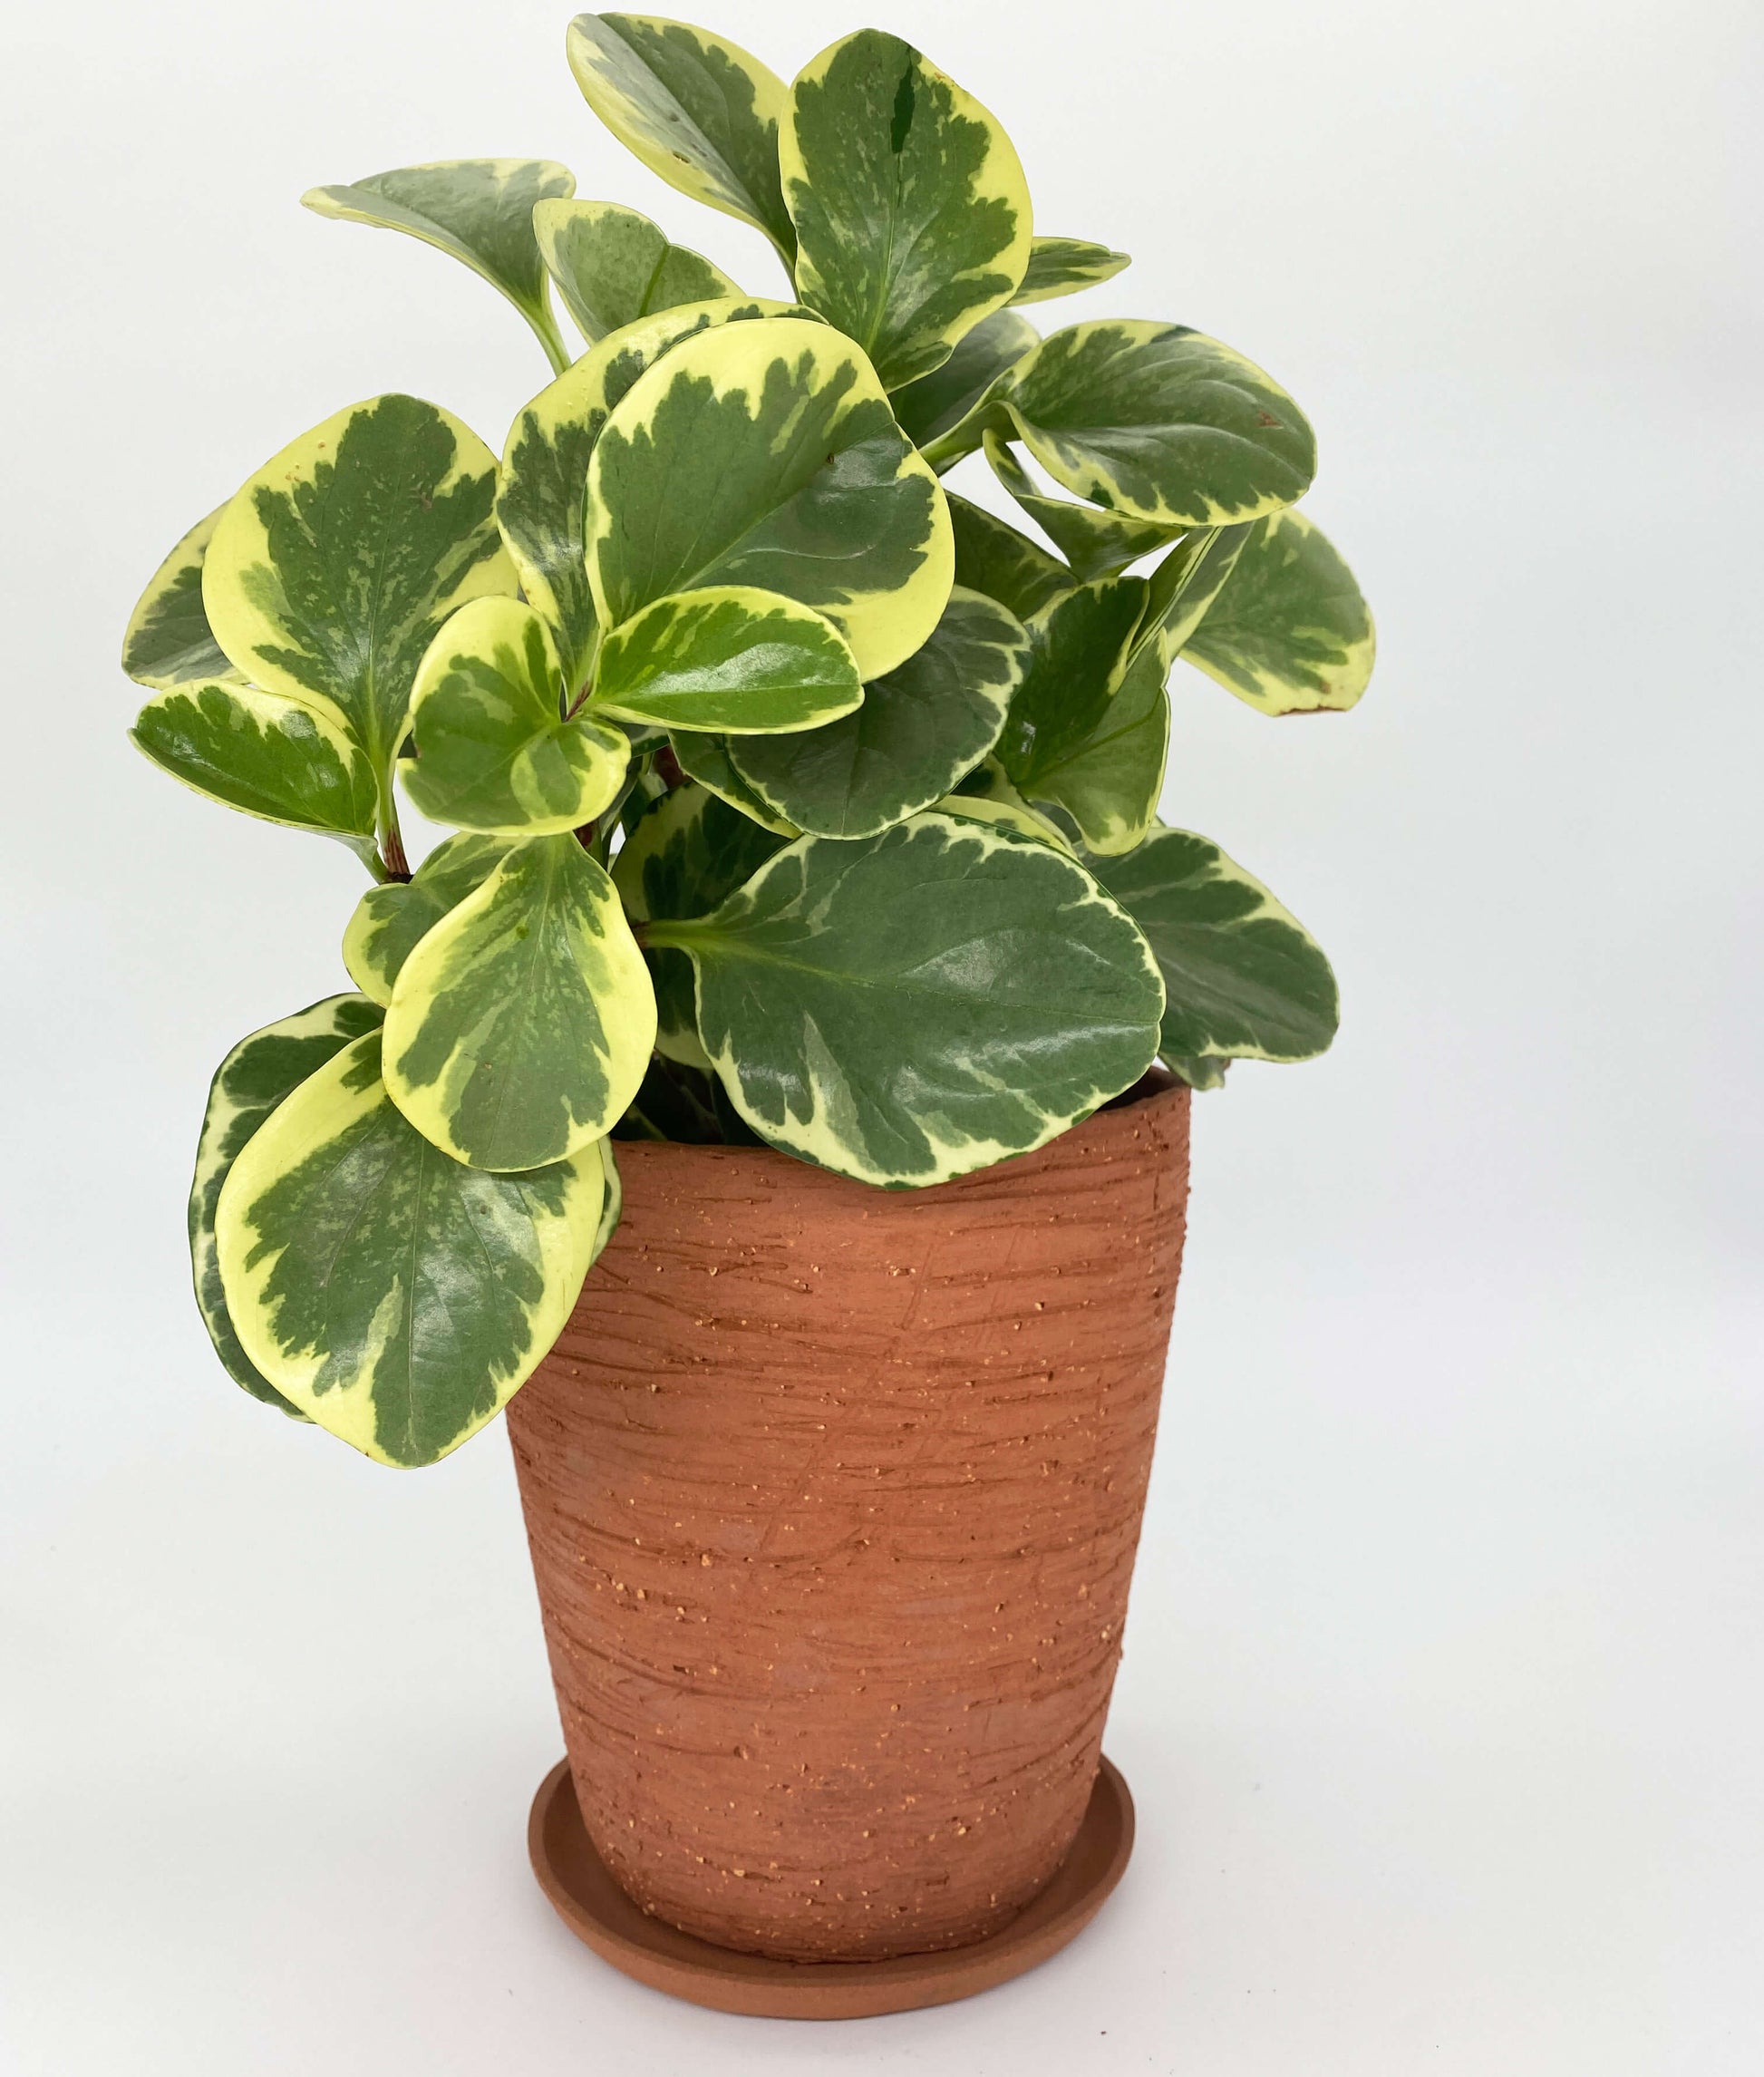 Terracotta ceramic planter